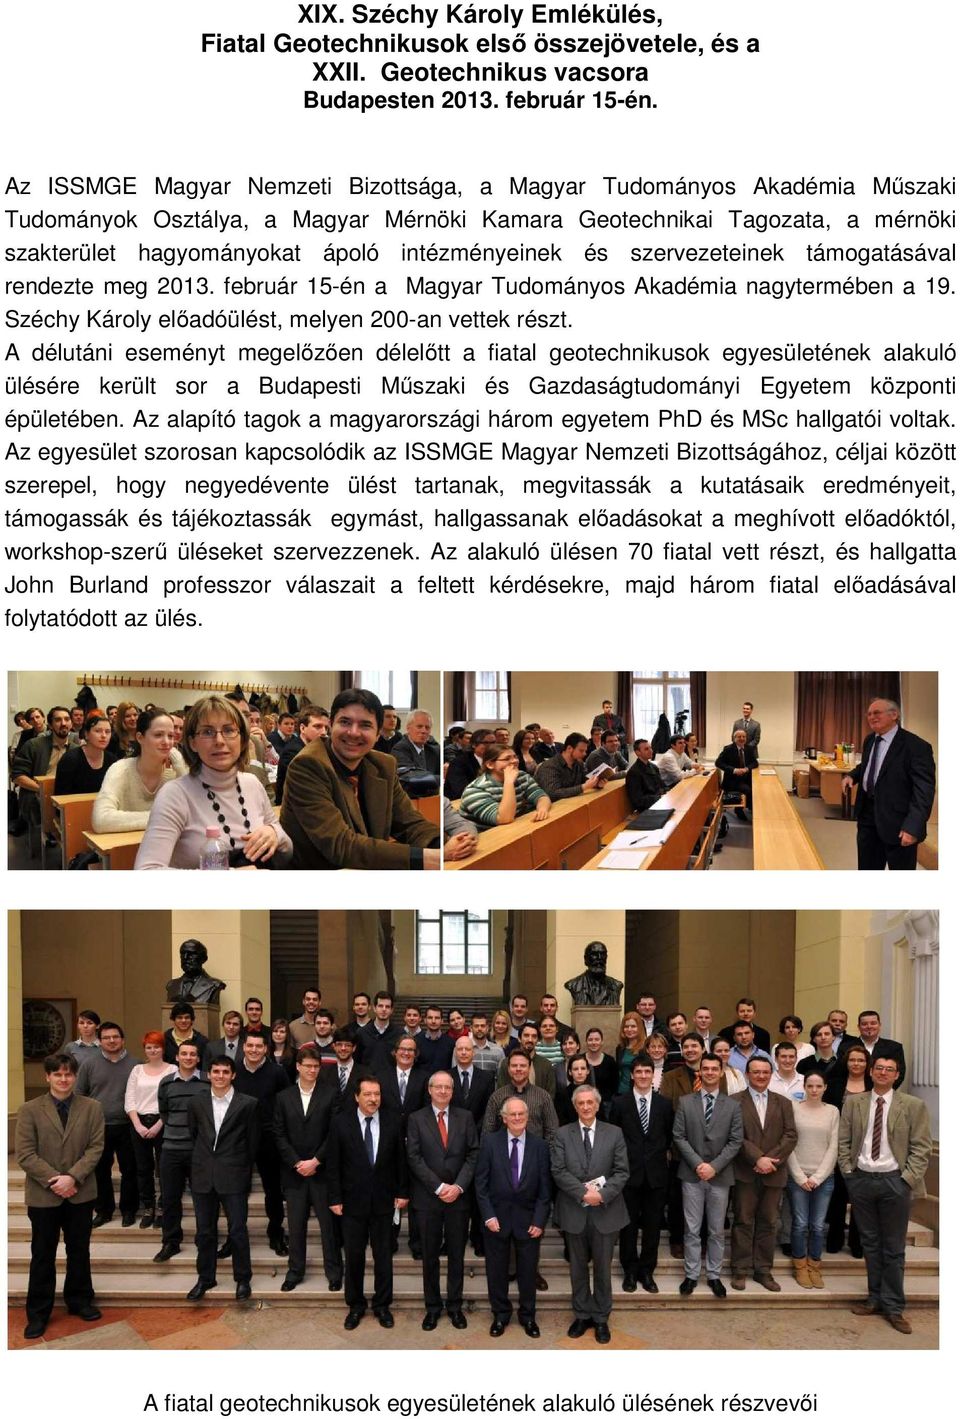 és szervezeteinek támogatásával rendezte meg 2013. február 15-én a Magyar Tudományos Akadémia nagytermében a 19. Széchy Károly előadóülést, melyen 200-an vettek részt.